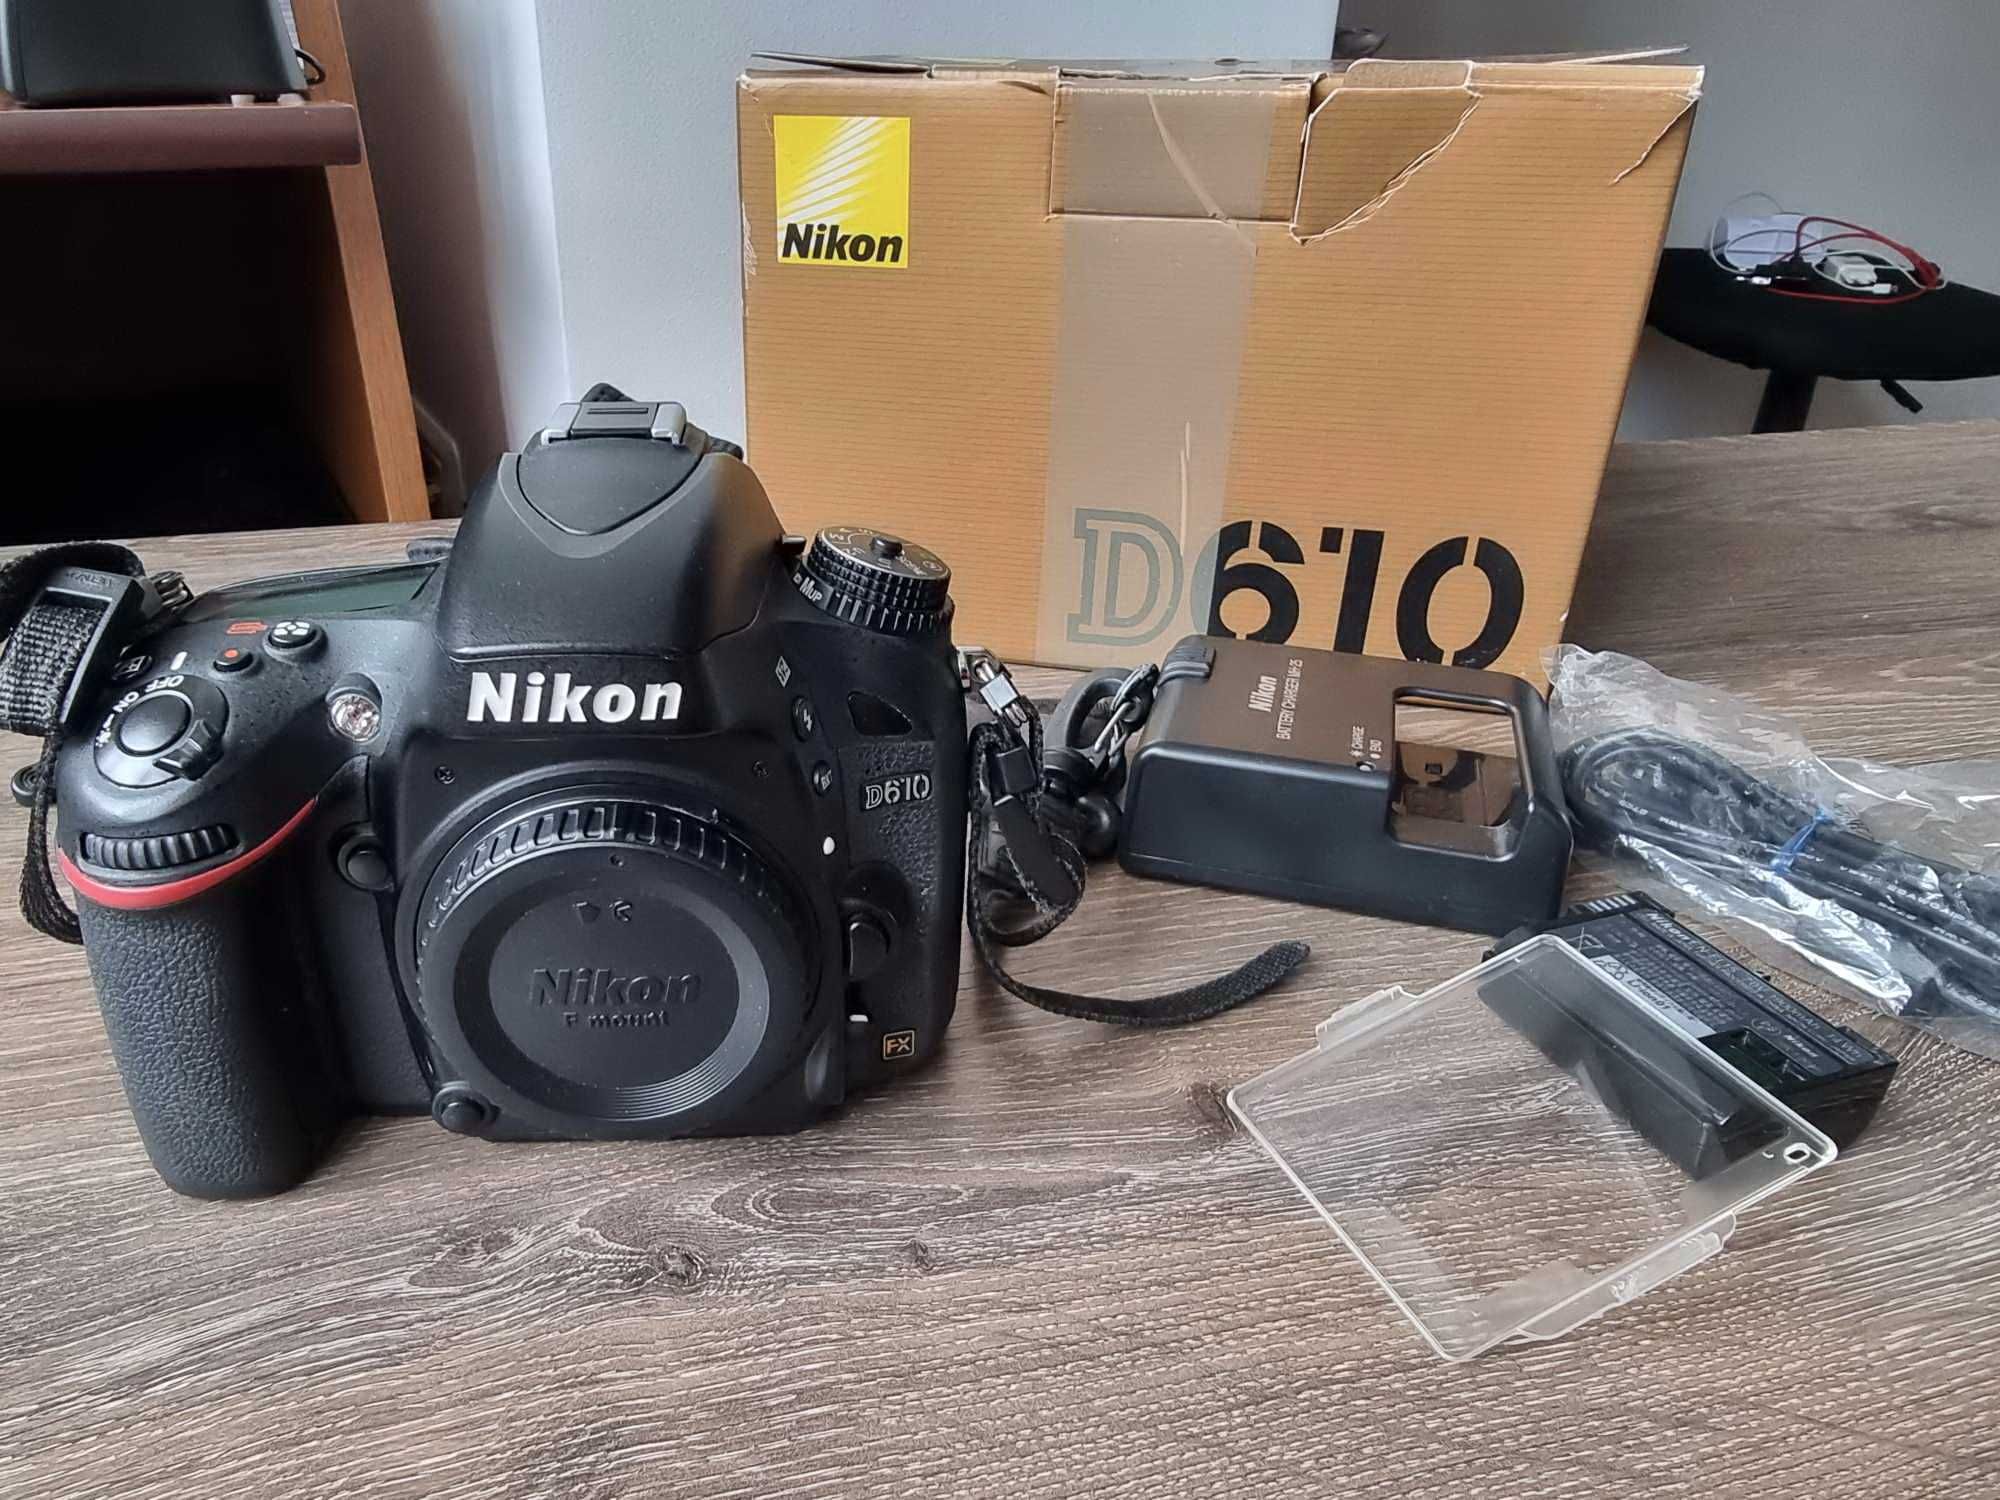 Nikon D610 full frame